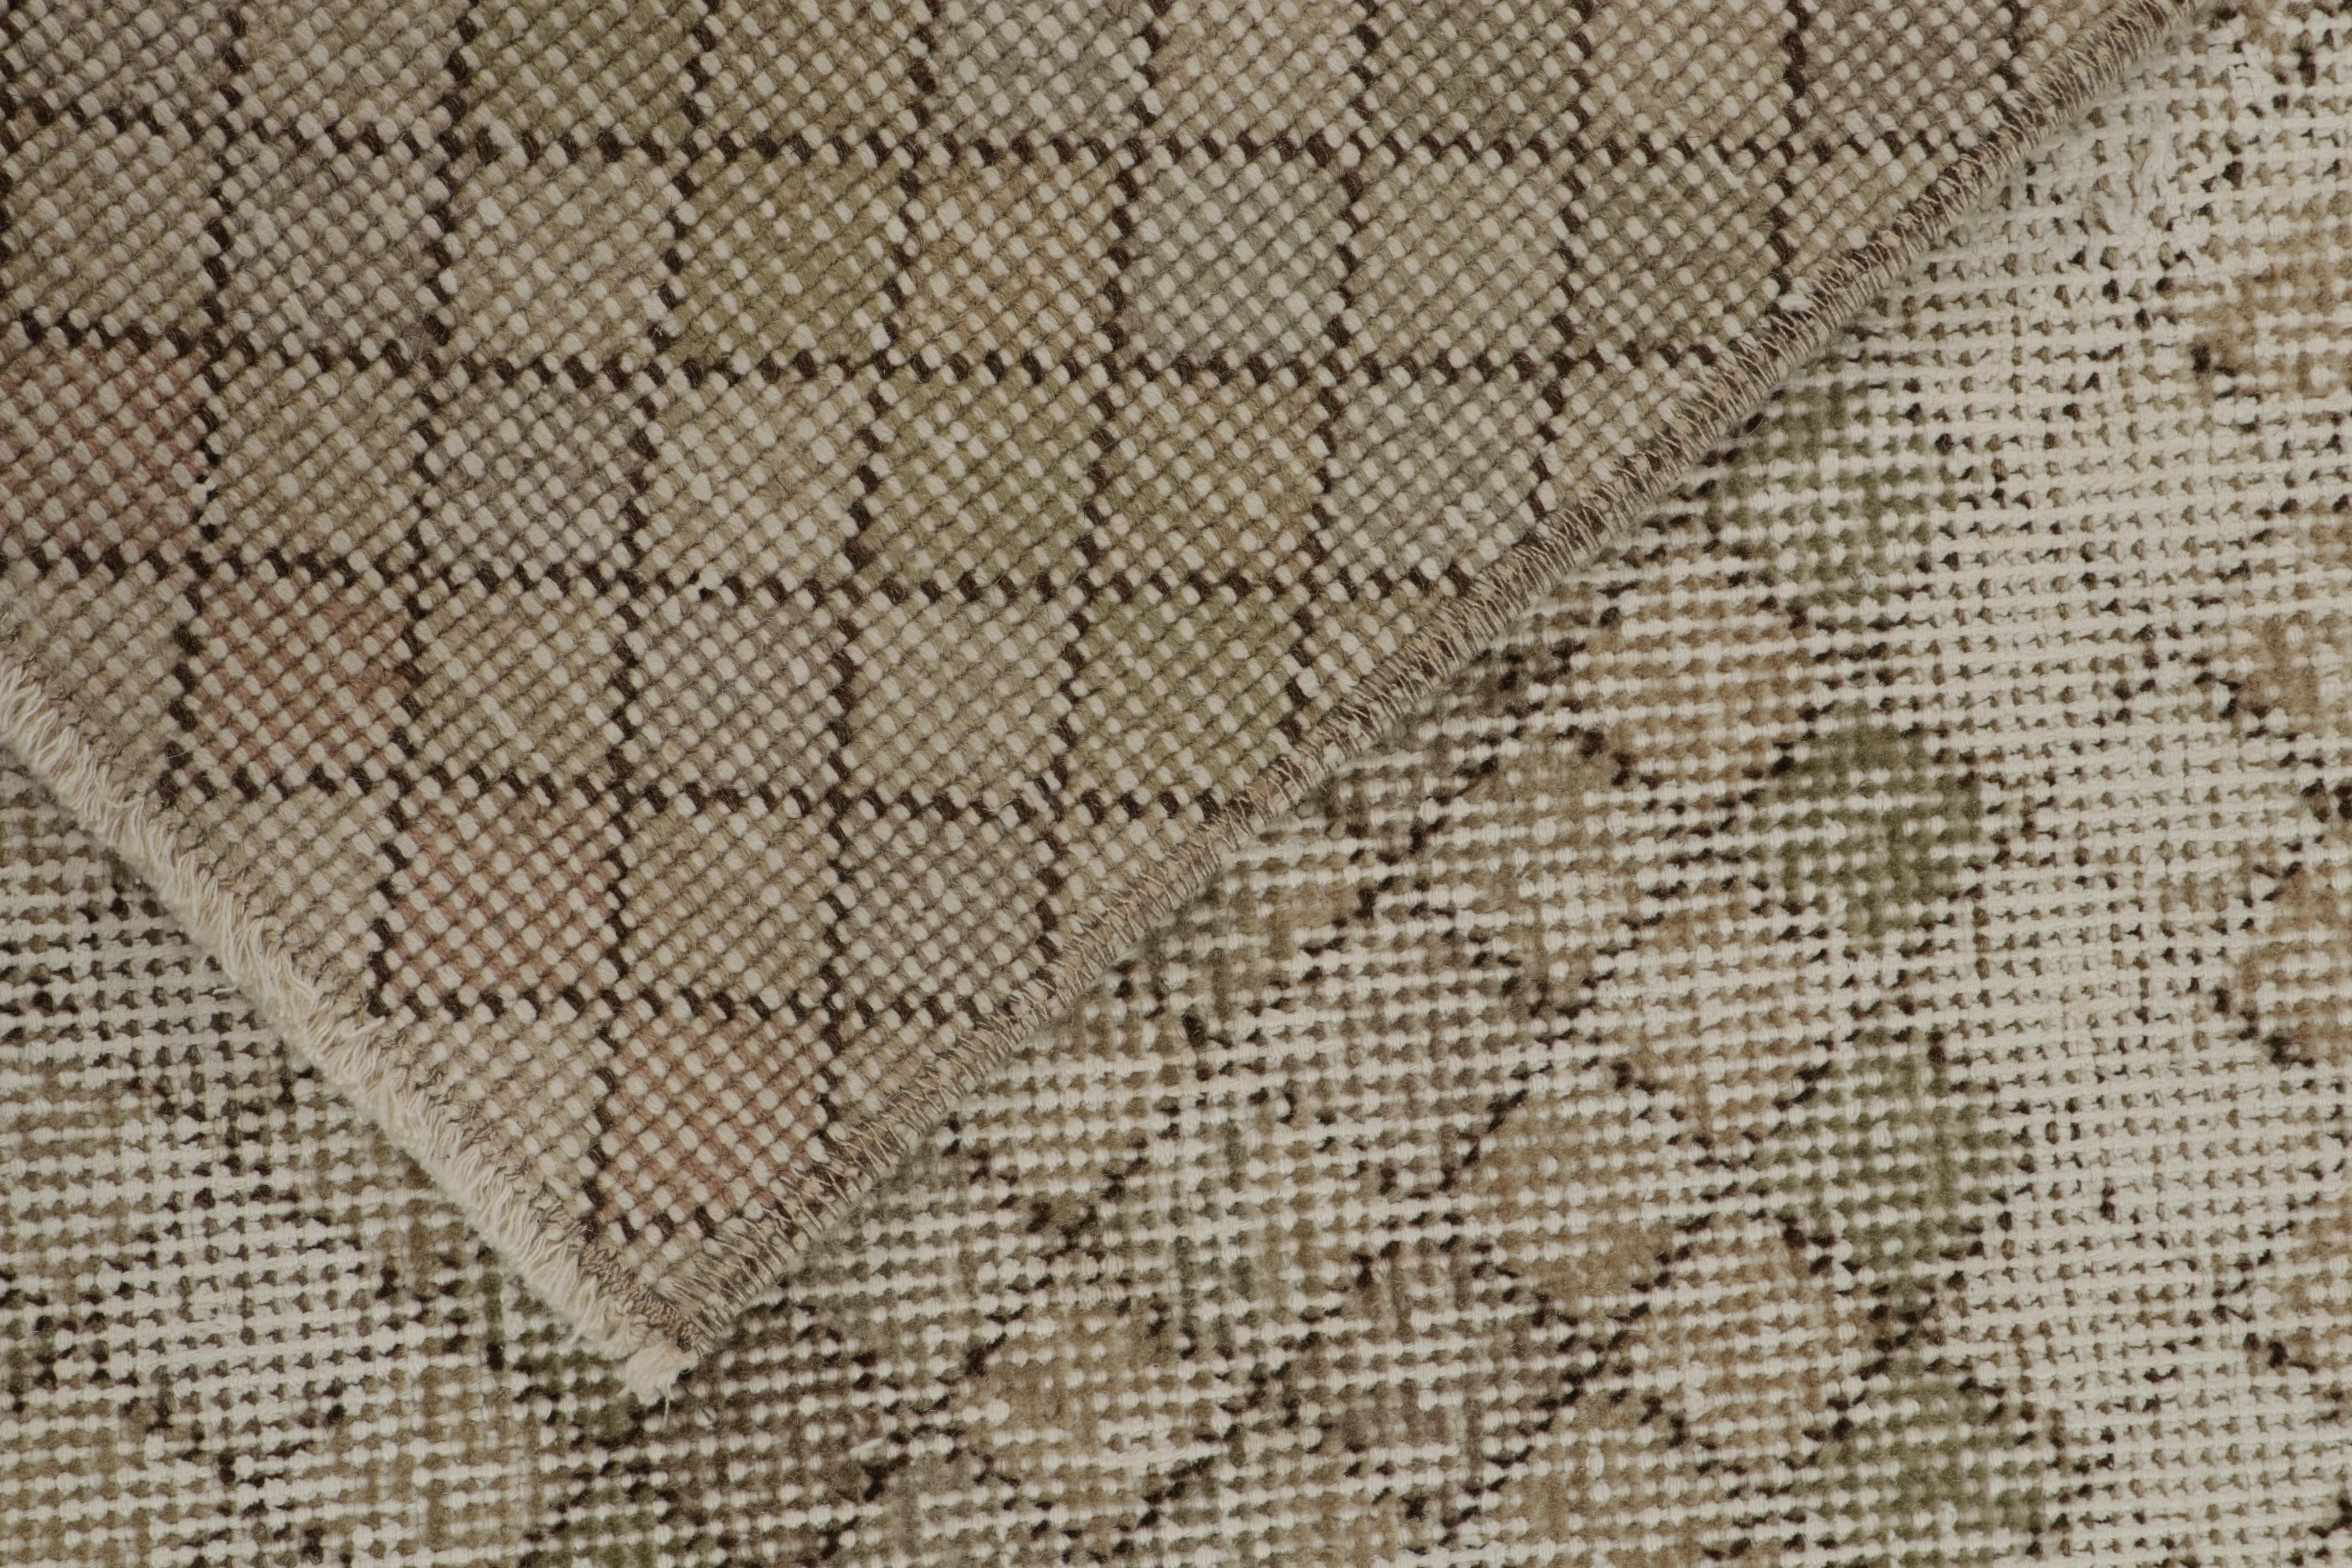 Wool Vintage Distressed Zeki Müren Rug in Beige Geometric Pattern For Sale